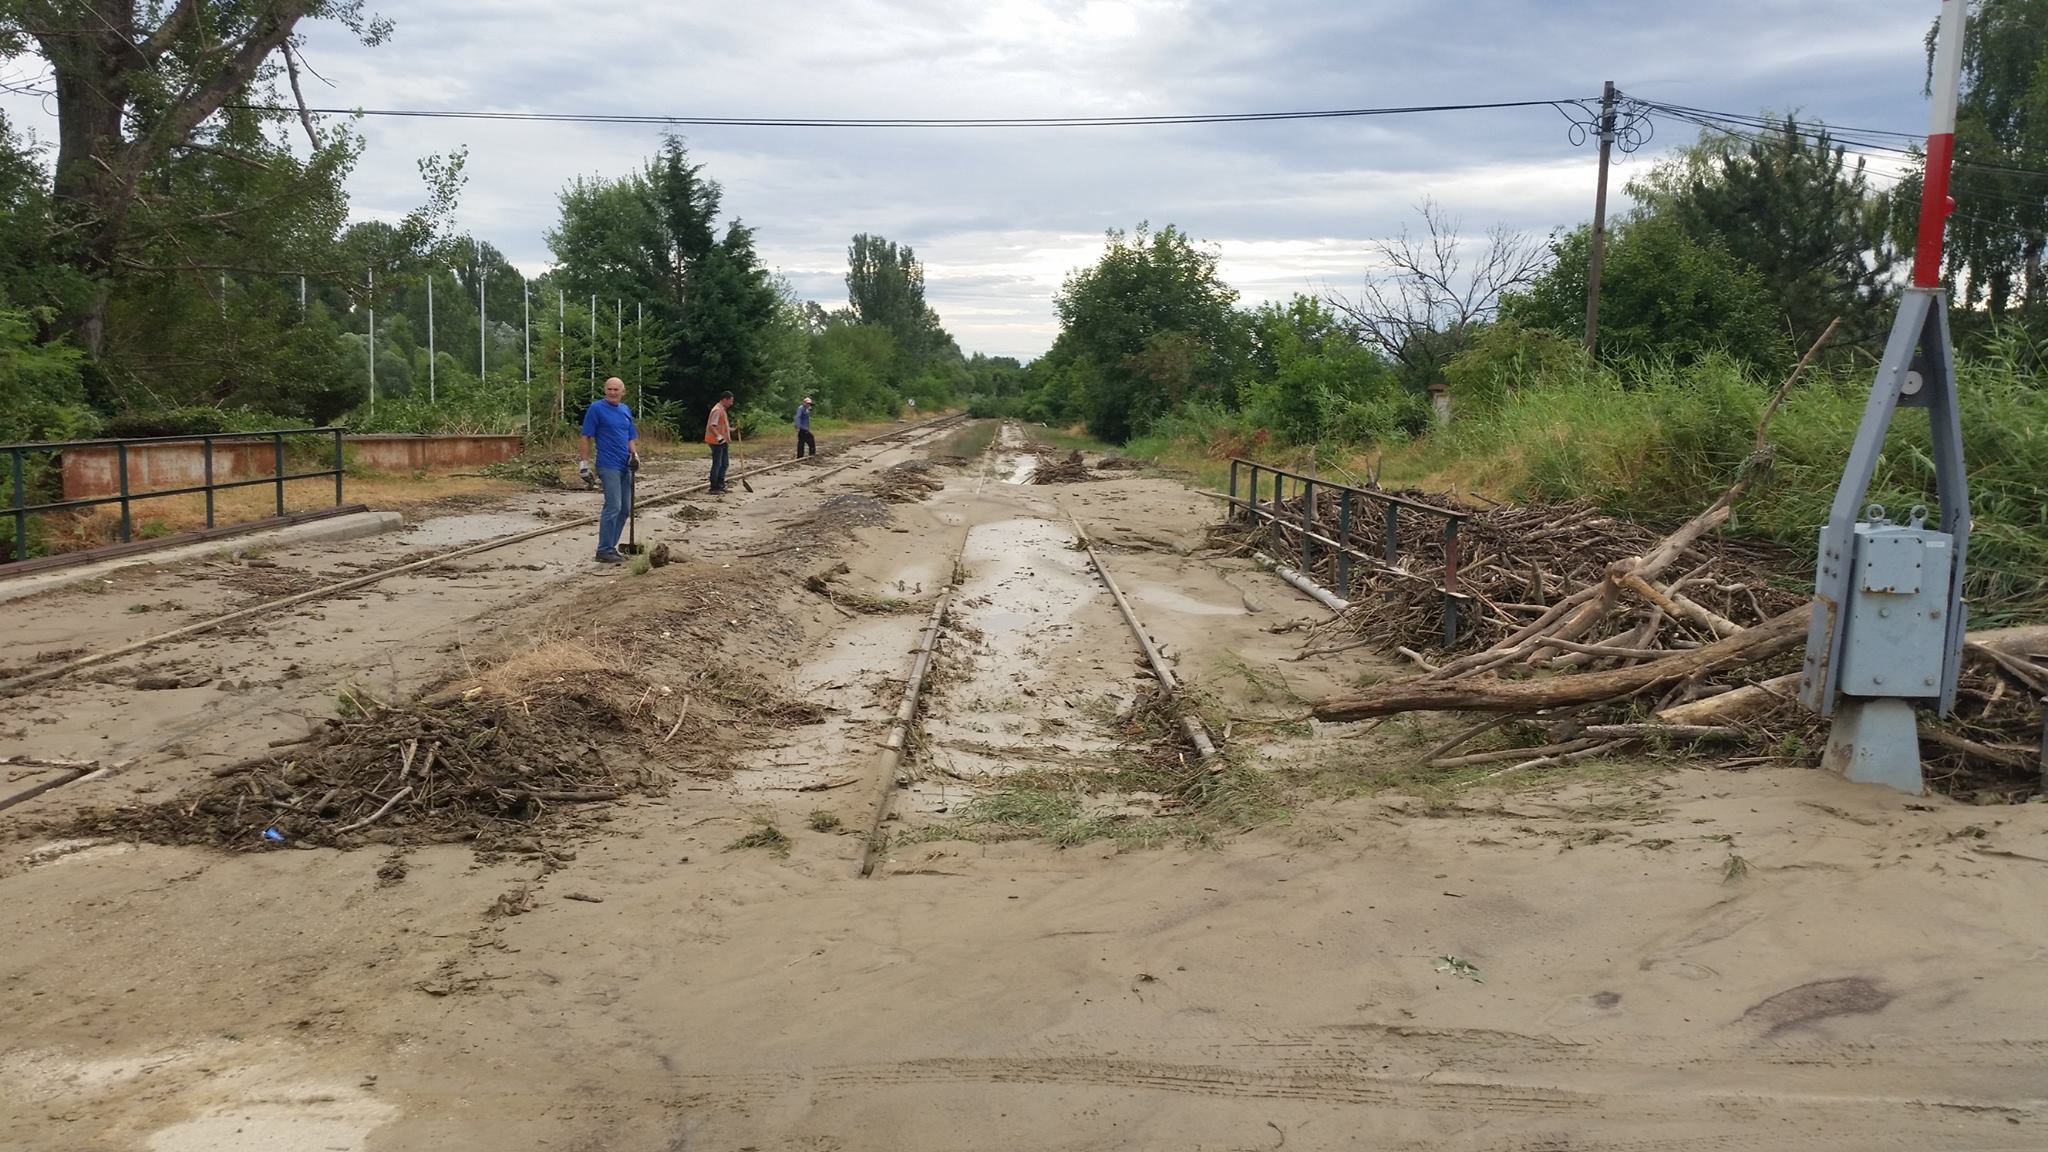 Neszmélyt ellepte a sár<br>A képre kattintva galéria nyílik!<br>(fotók: Esztergom–Komárom vasútvonal Facebook oldala)